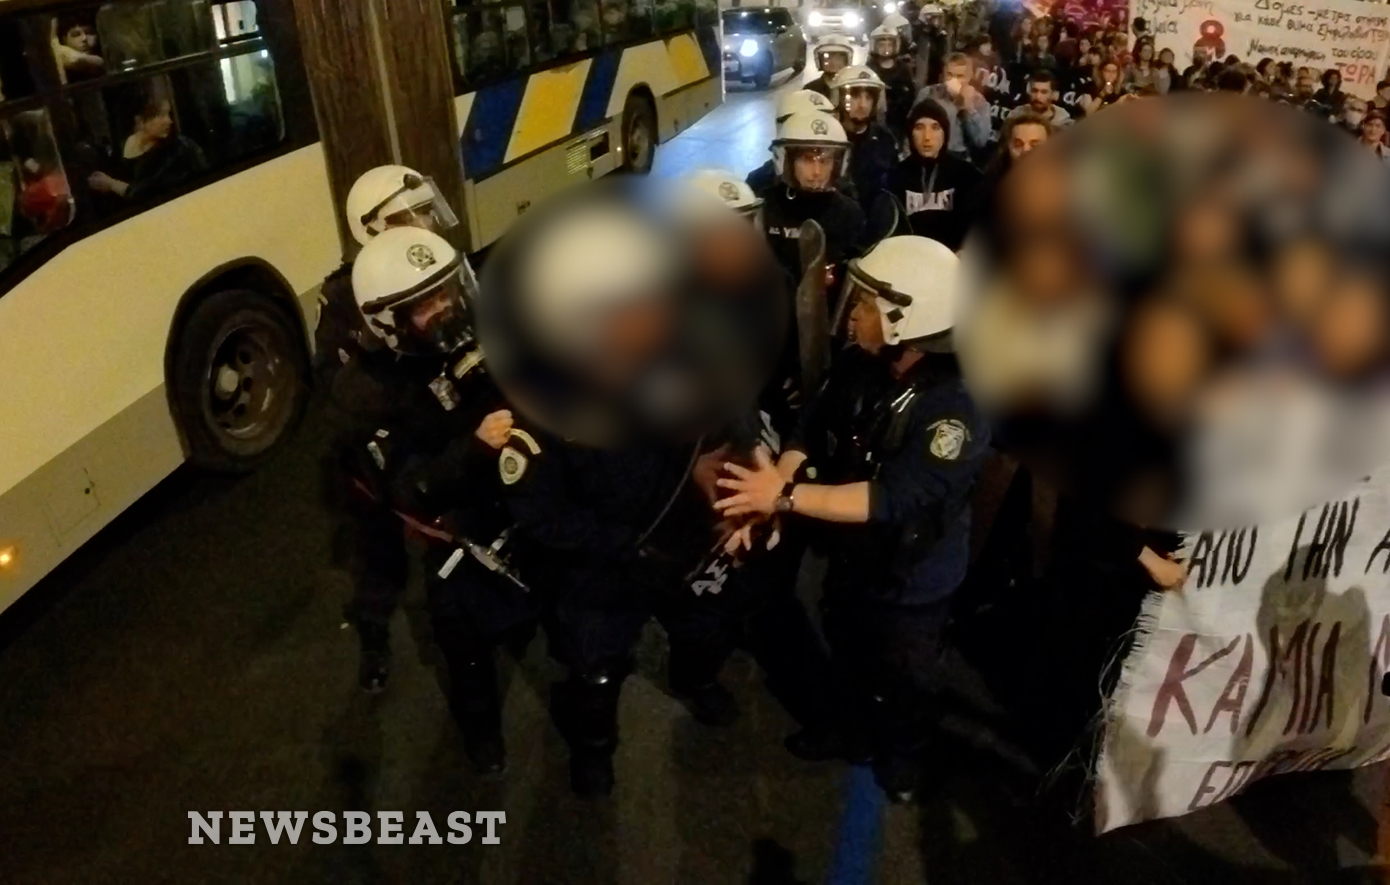 Αστυνομικός προκαλεί και βρίζει διαδηλωτή στη συγκέντρωση διαμαρτυρίας για τις γυναικοκτονίες &#8211; «Έλα εδώ ρε μ…α»